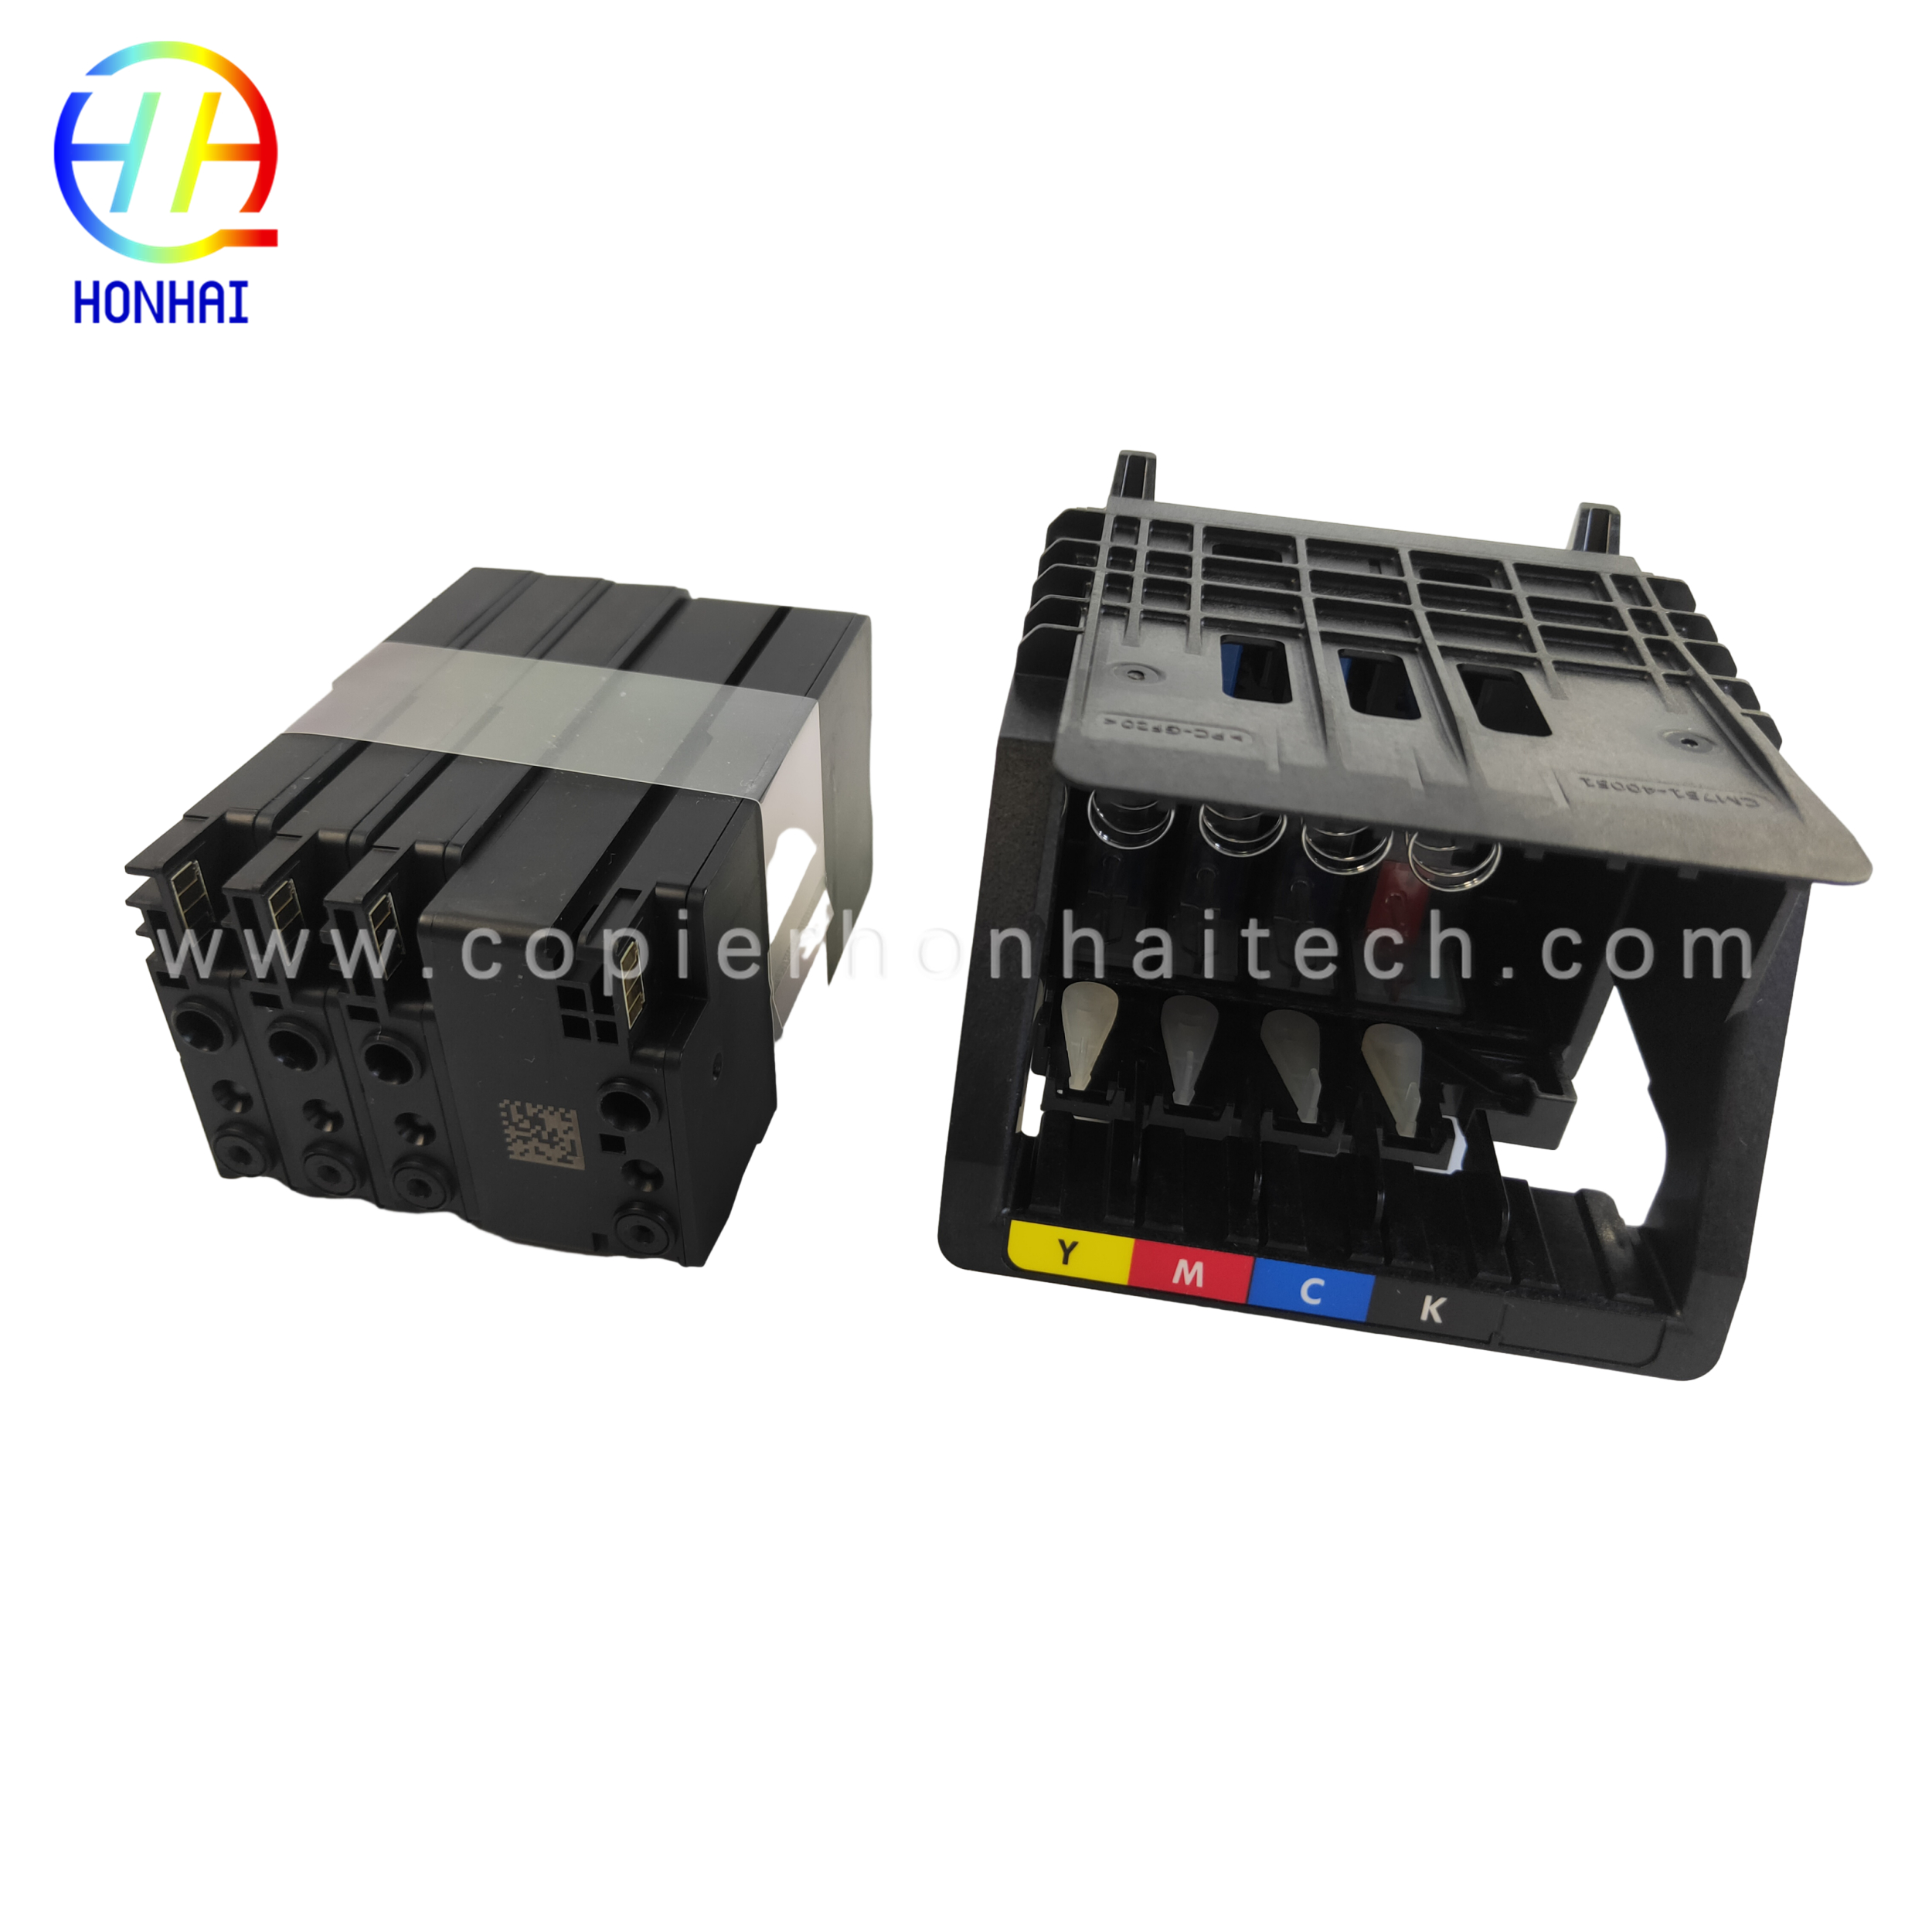 https://www.copierhonhaitech.com/original-new-designjet-printhead-replacement-kit-3ed58a-for-hp-713-designjet-t650-t630-t230-t210-studio-plotter-printers-black-product/